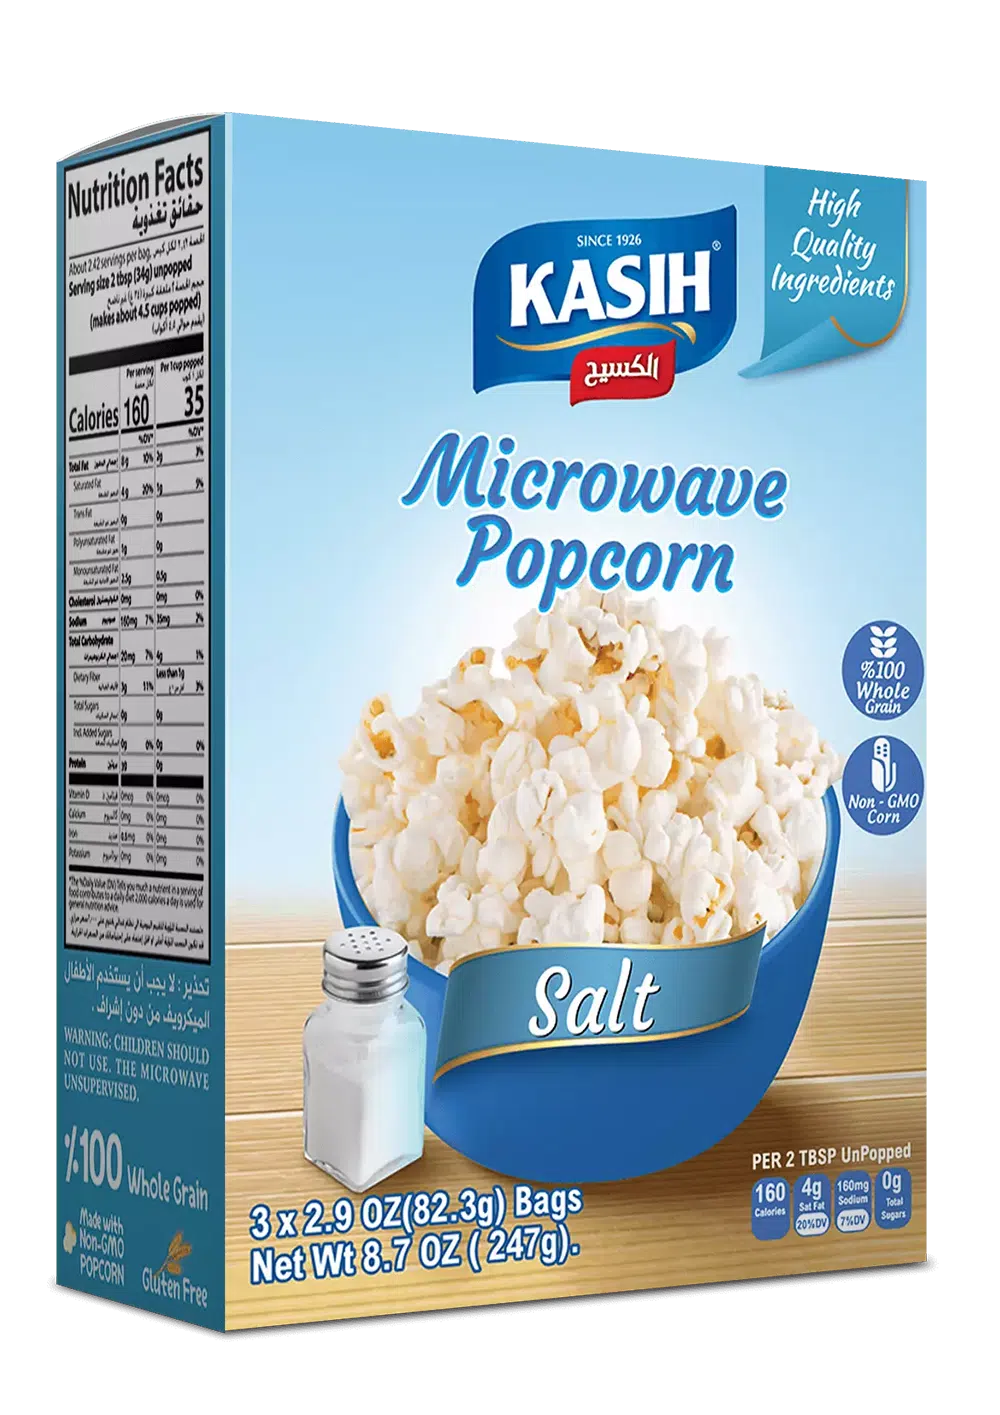 Kasih_Microwave_popcorn_Himalayan_salt